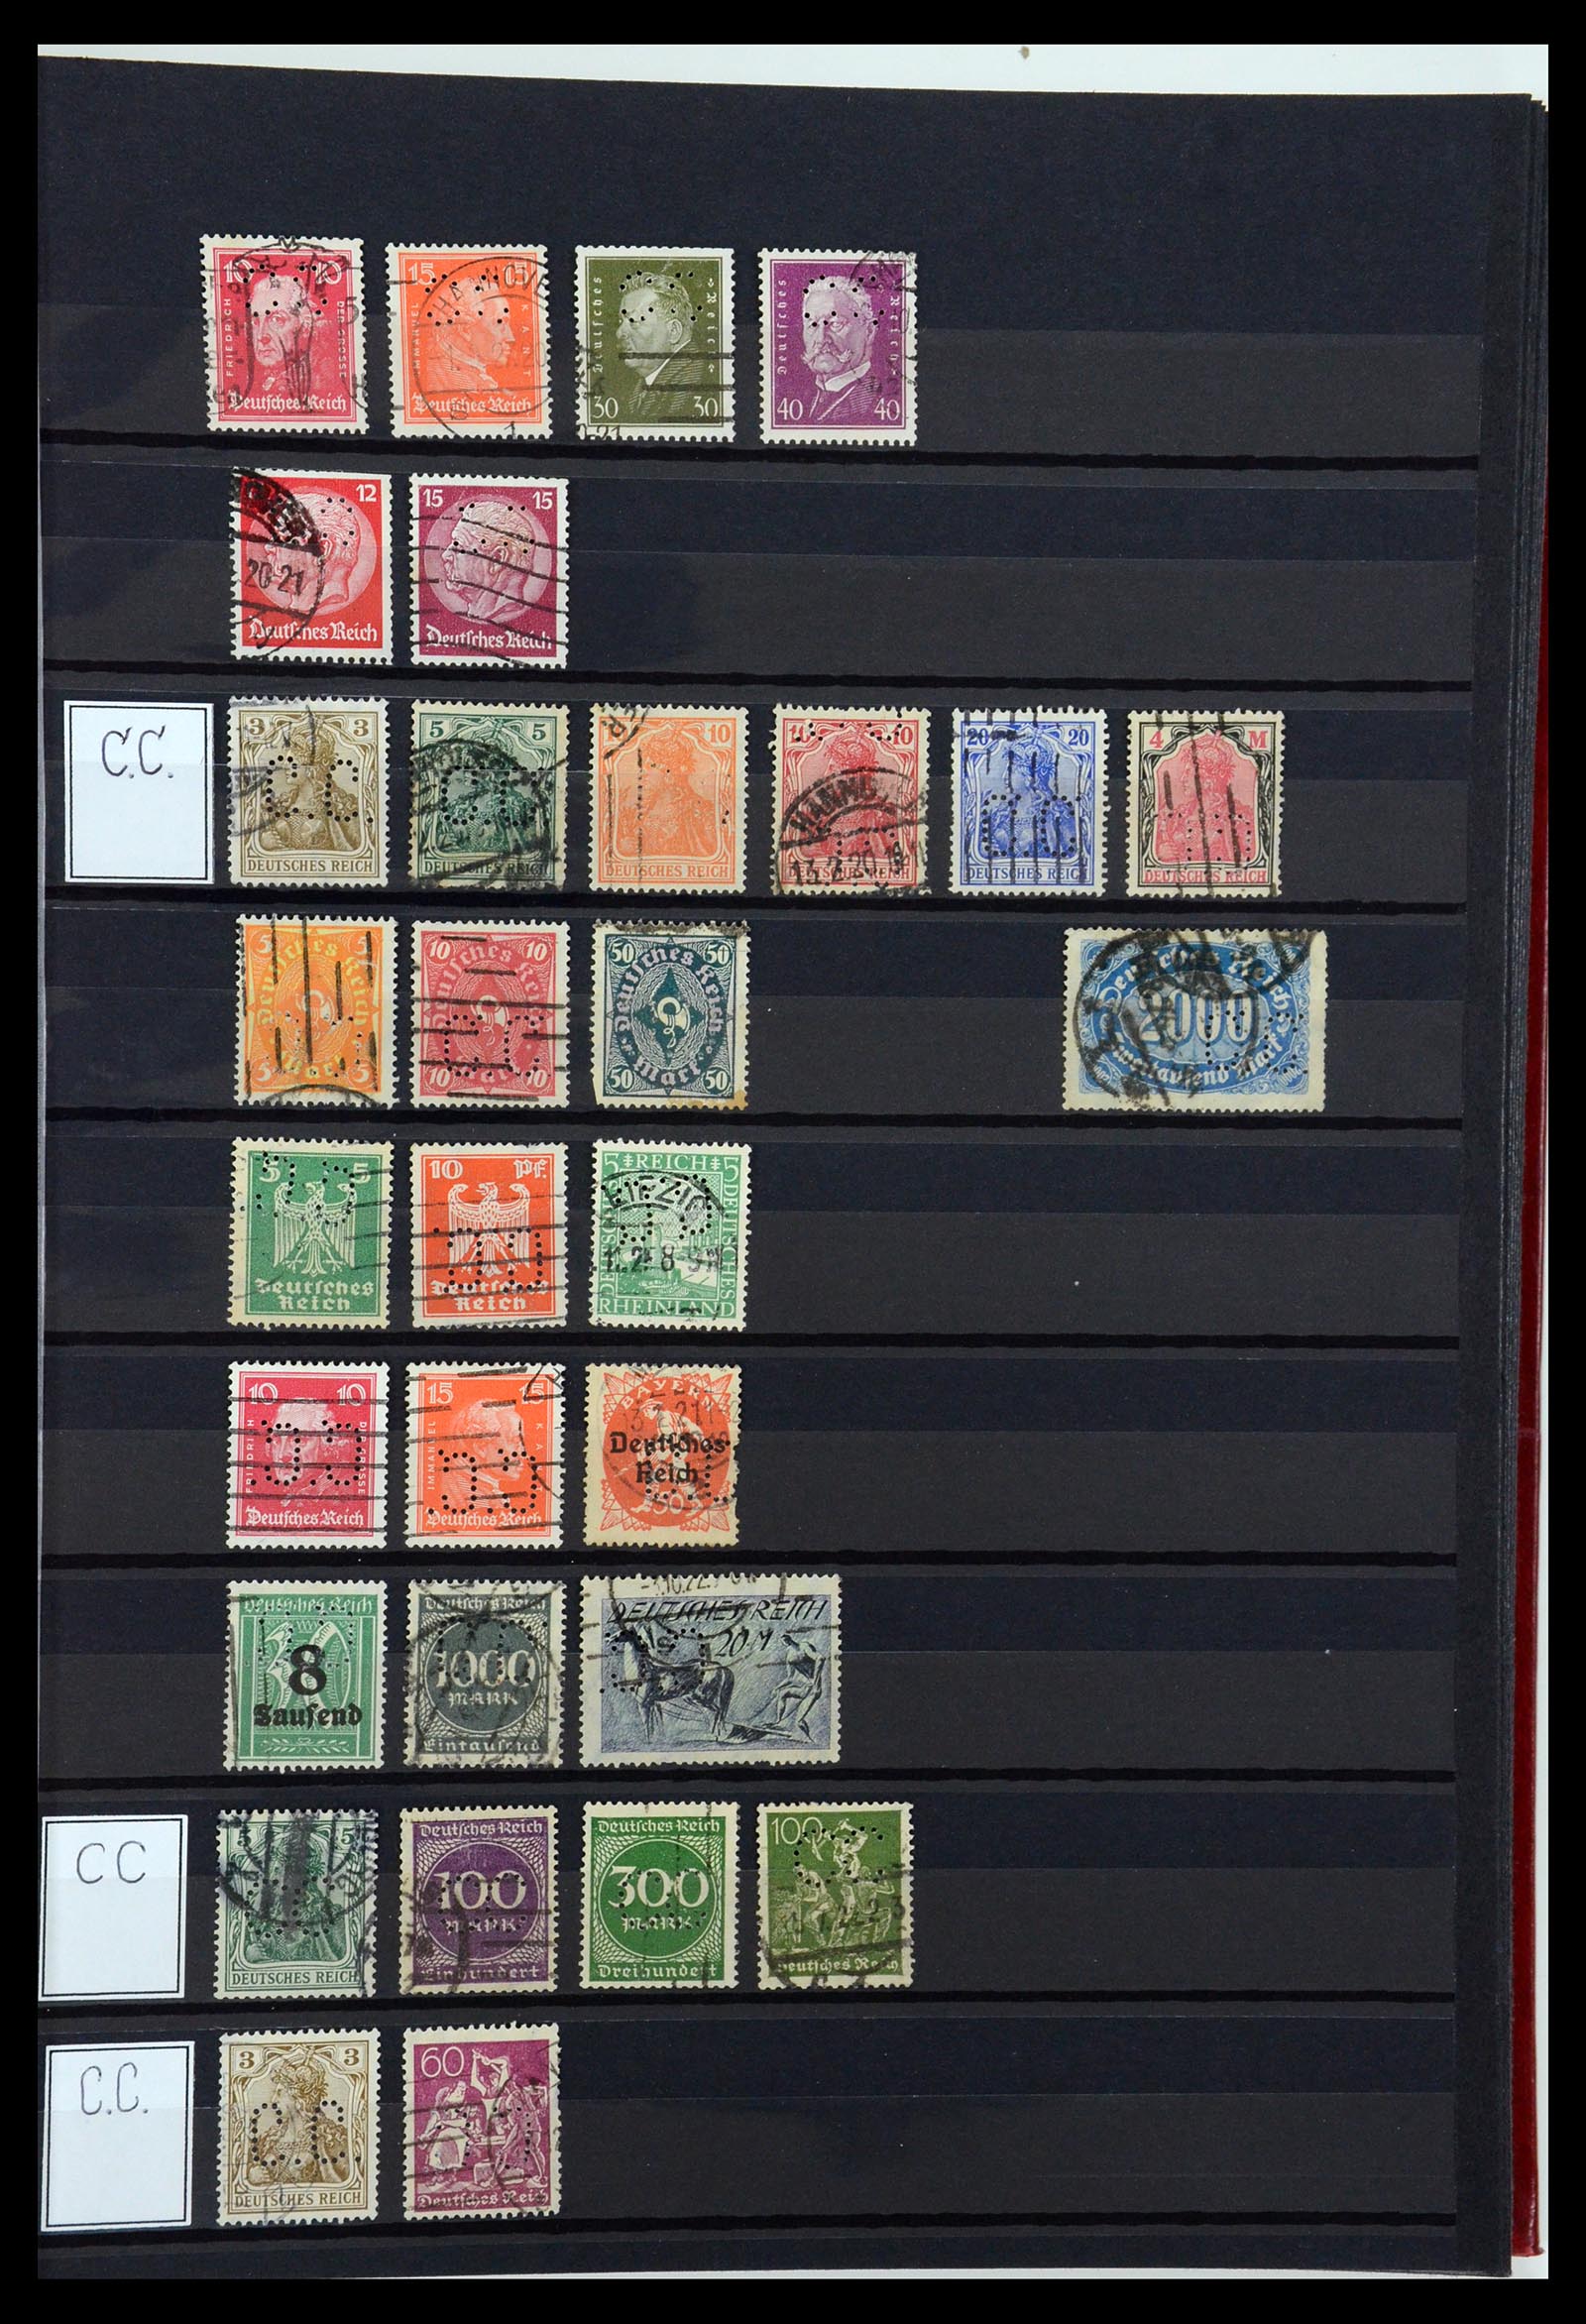 36405 062 - Stamp collection 36405 German Reich perfins 1880-1945.